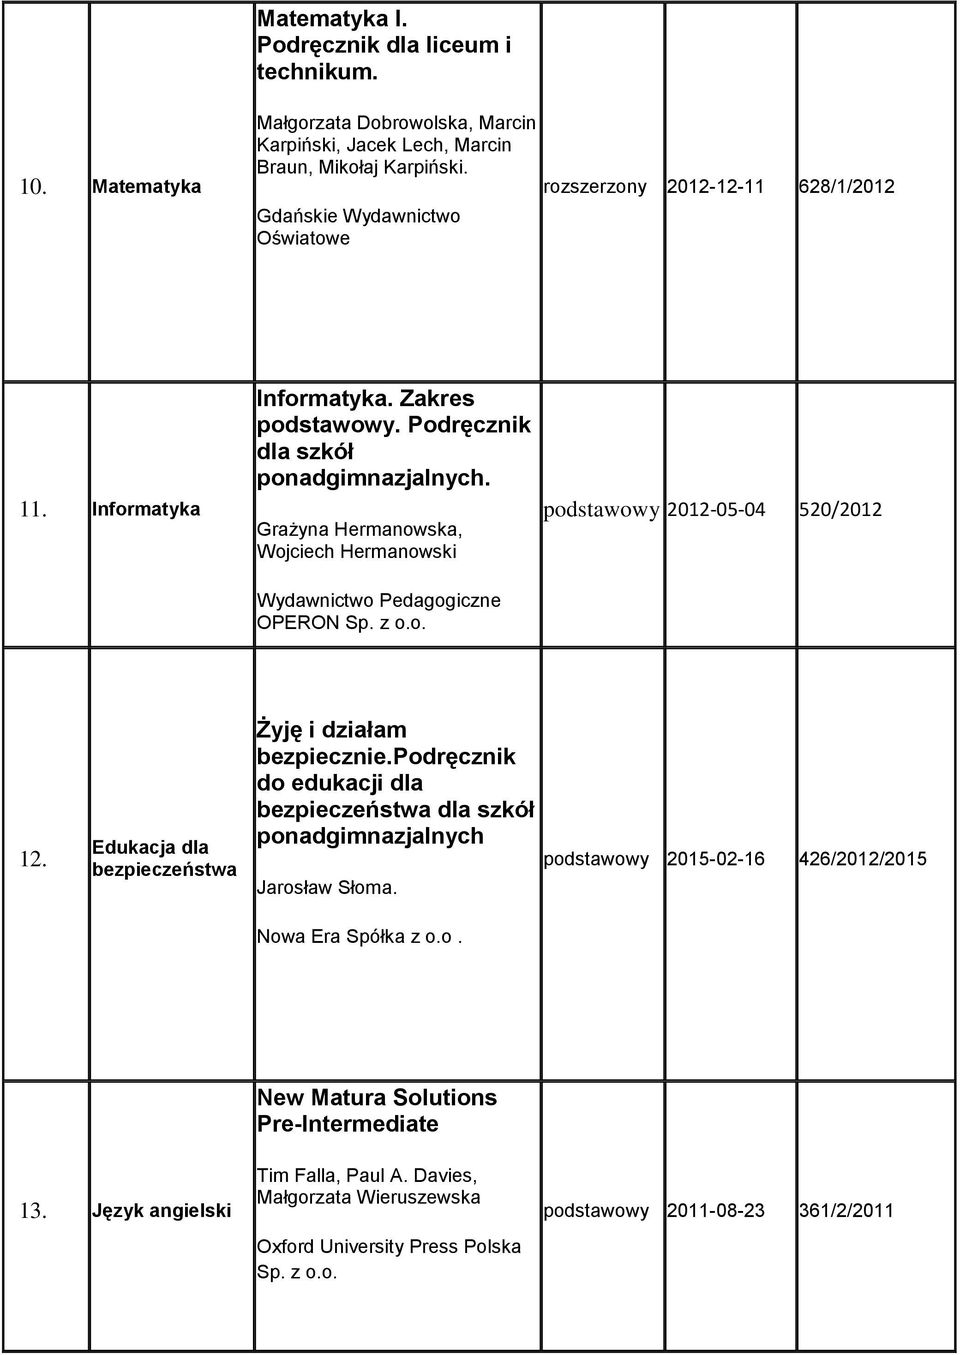 Podręcznik dla szkół Grażyna Hermanowska, Wojciech Hermanowski OPERON podstawowy 2012-05-04 520/2012 12.